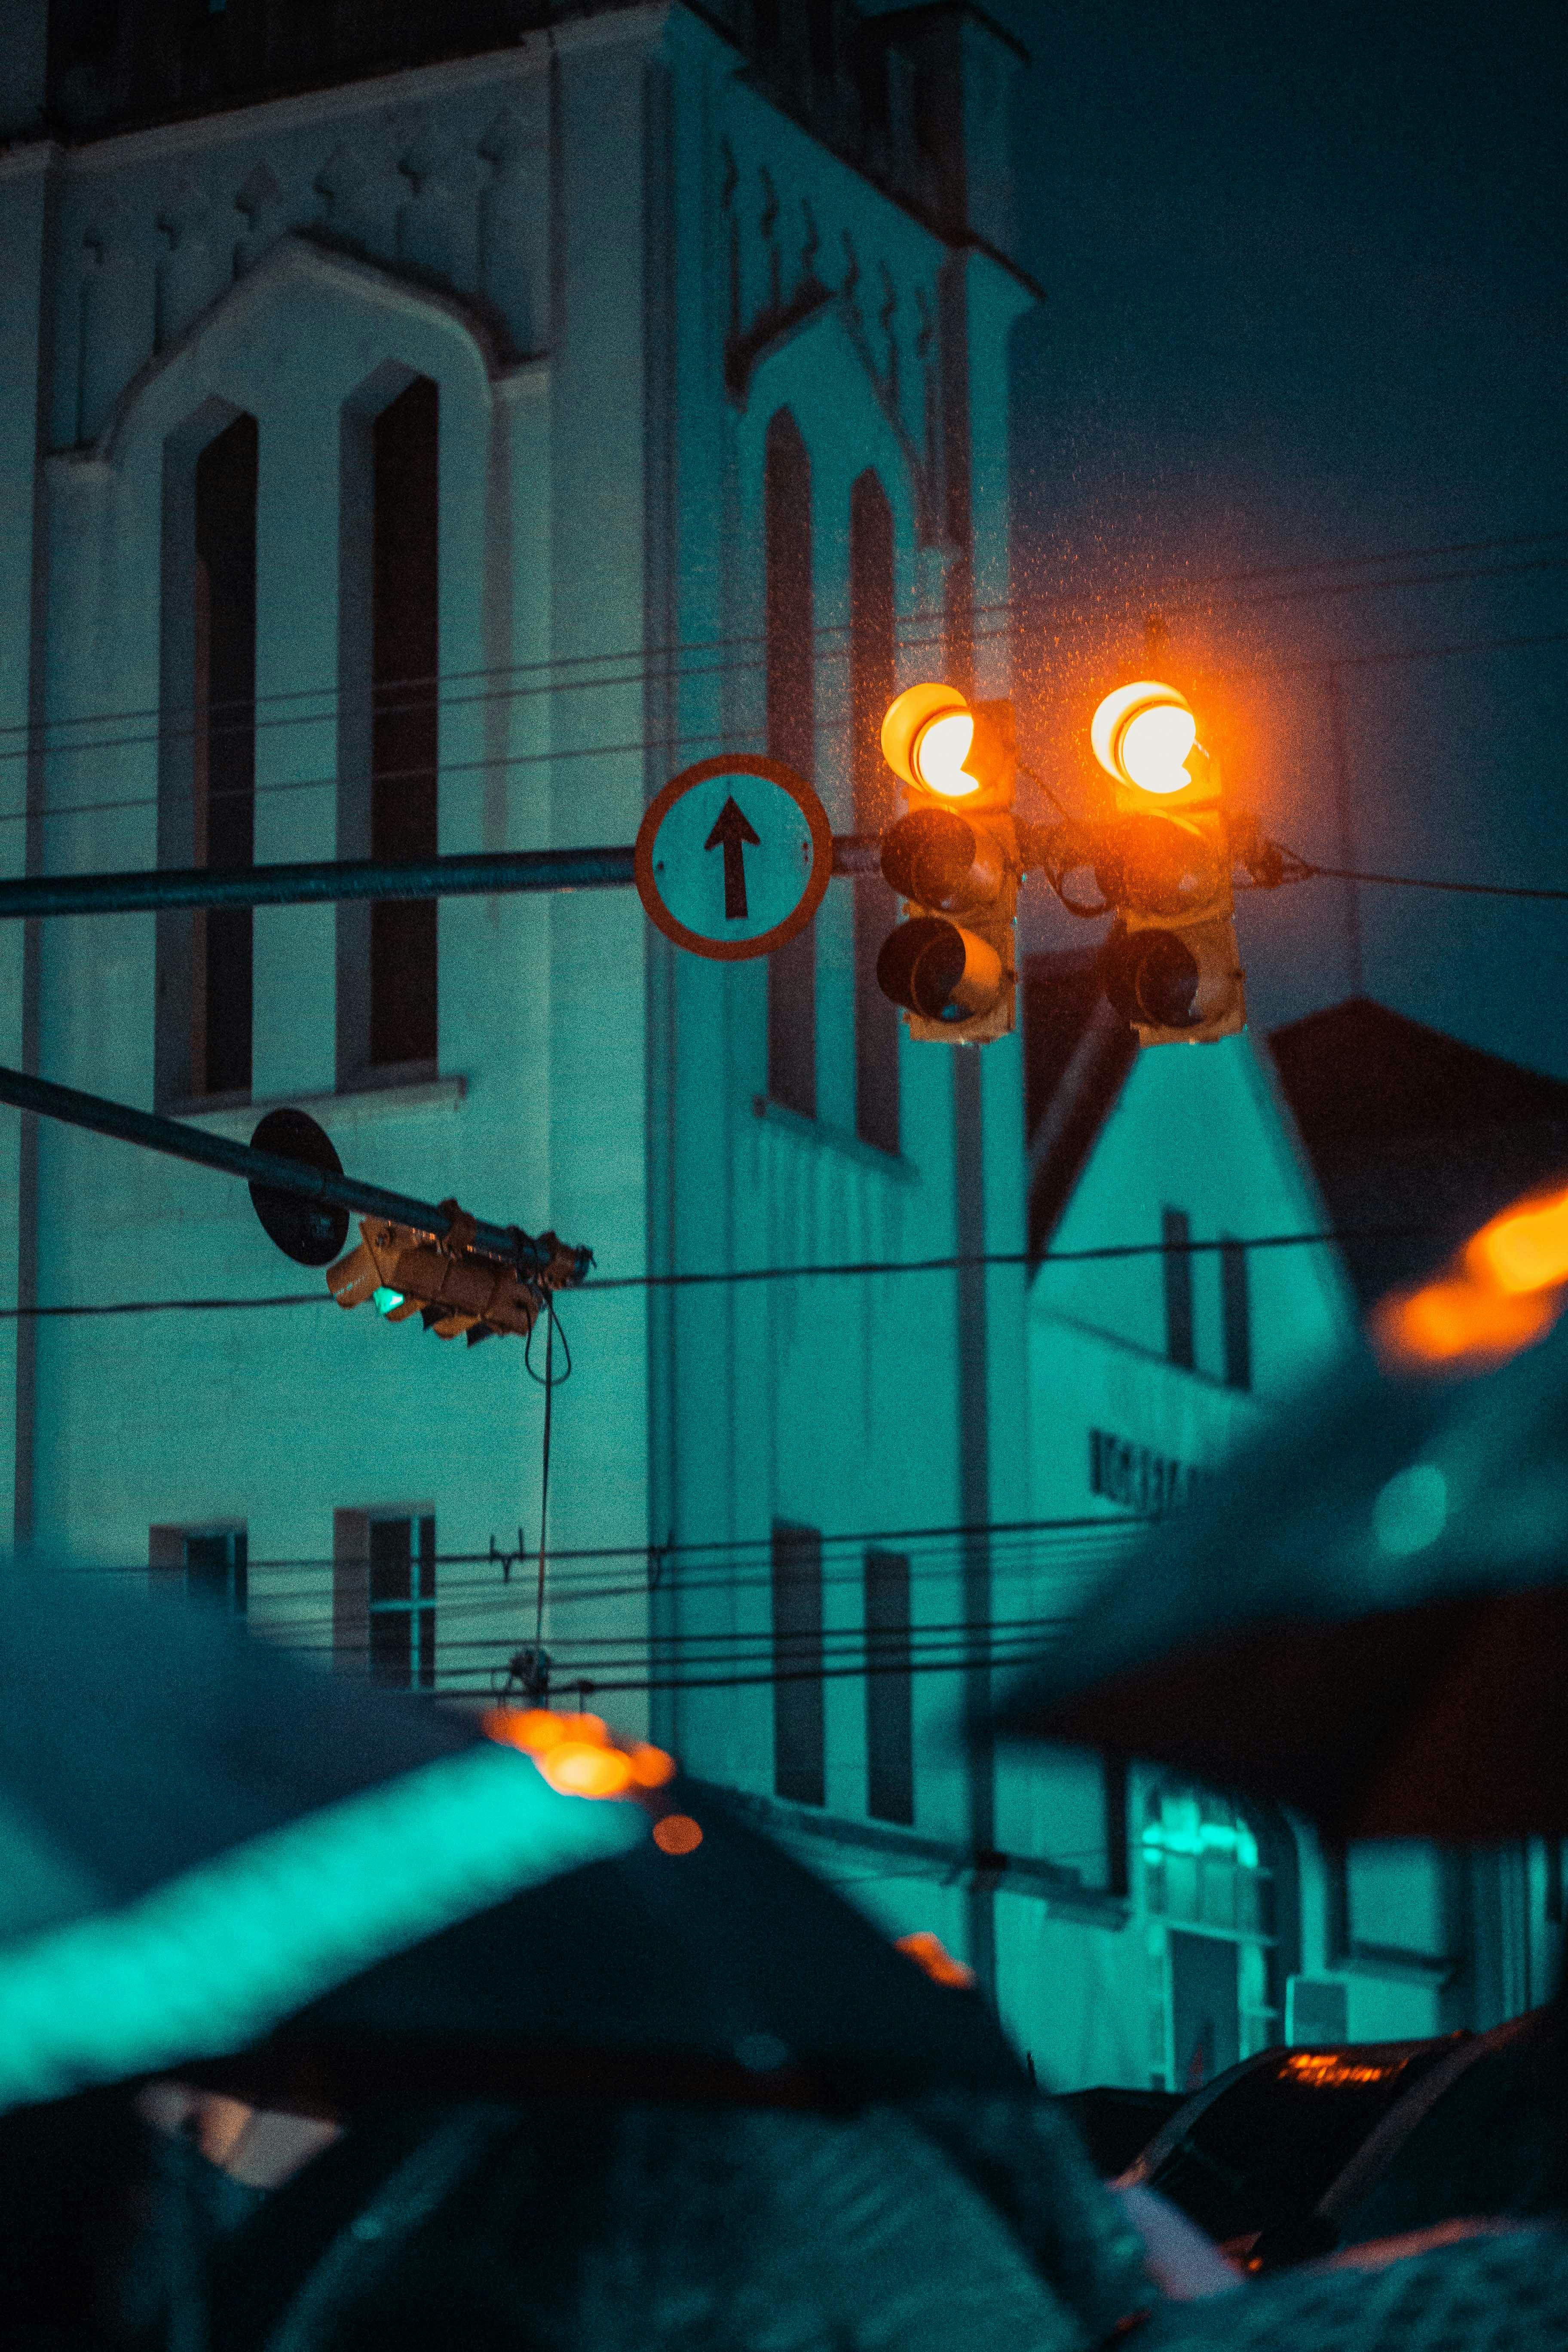 Đèn giao thông là một phần không thể thiếu trong cuộc sống hàng ngày của chúng ta. Hãy cùng chiêm ngưỡng những hình ảnh đèn giao thông và khám phá sự phong phú và đa dạng trong cuộc sống. Cùng tìm kiếm những điều độc đáo mà bạn chỉ có thể tìm thấy ở trong hình ảnh này.